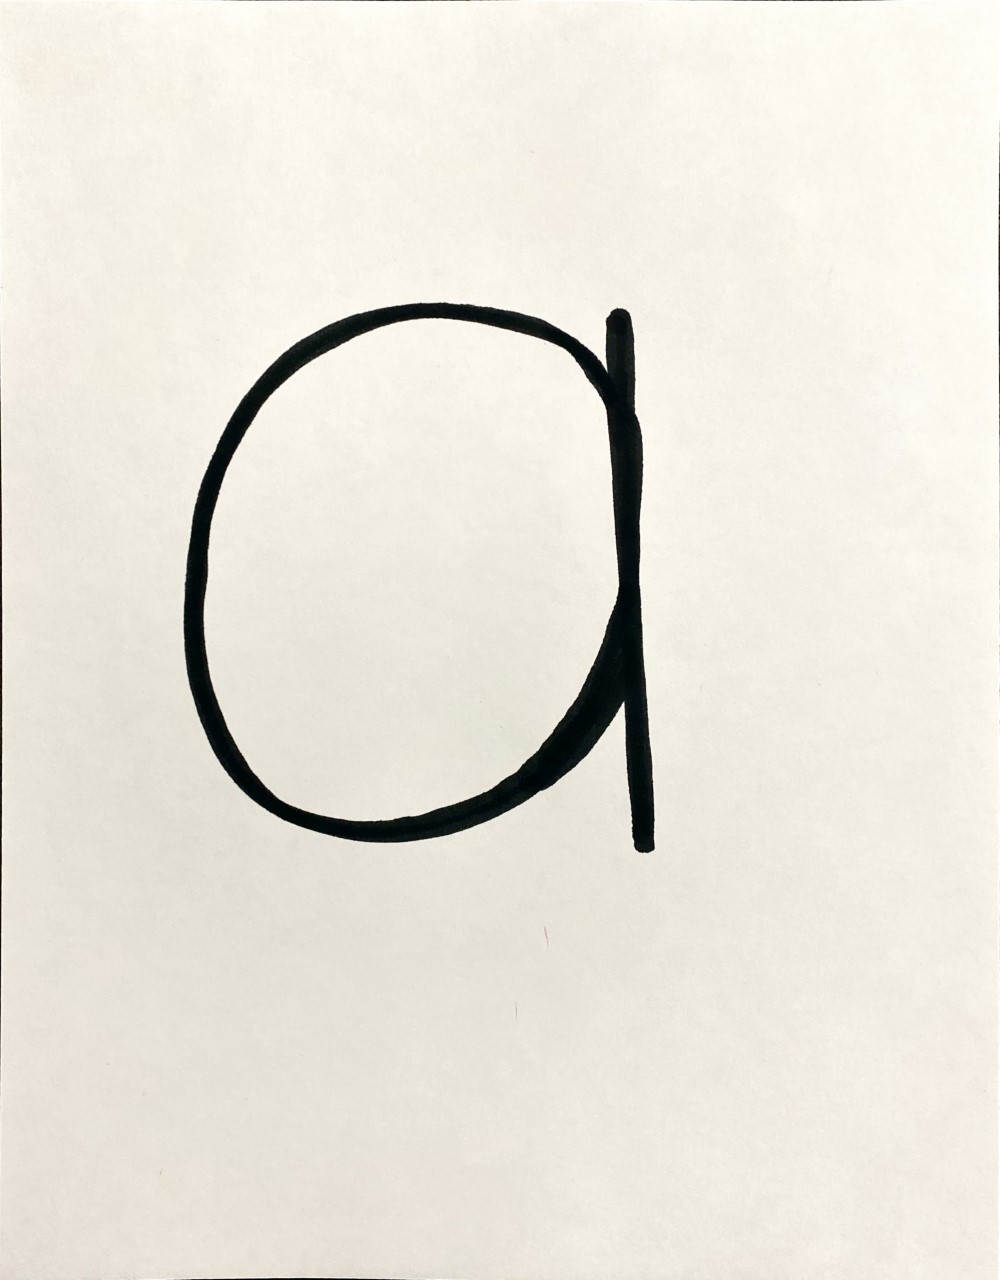 Lower case letter written on an 8.5 x 11 paper